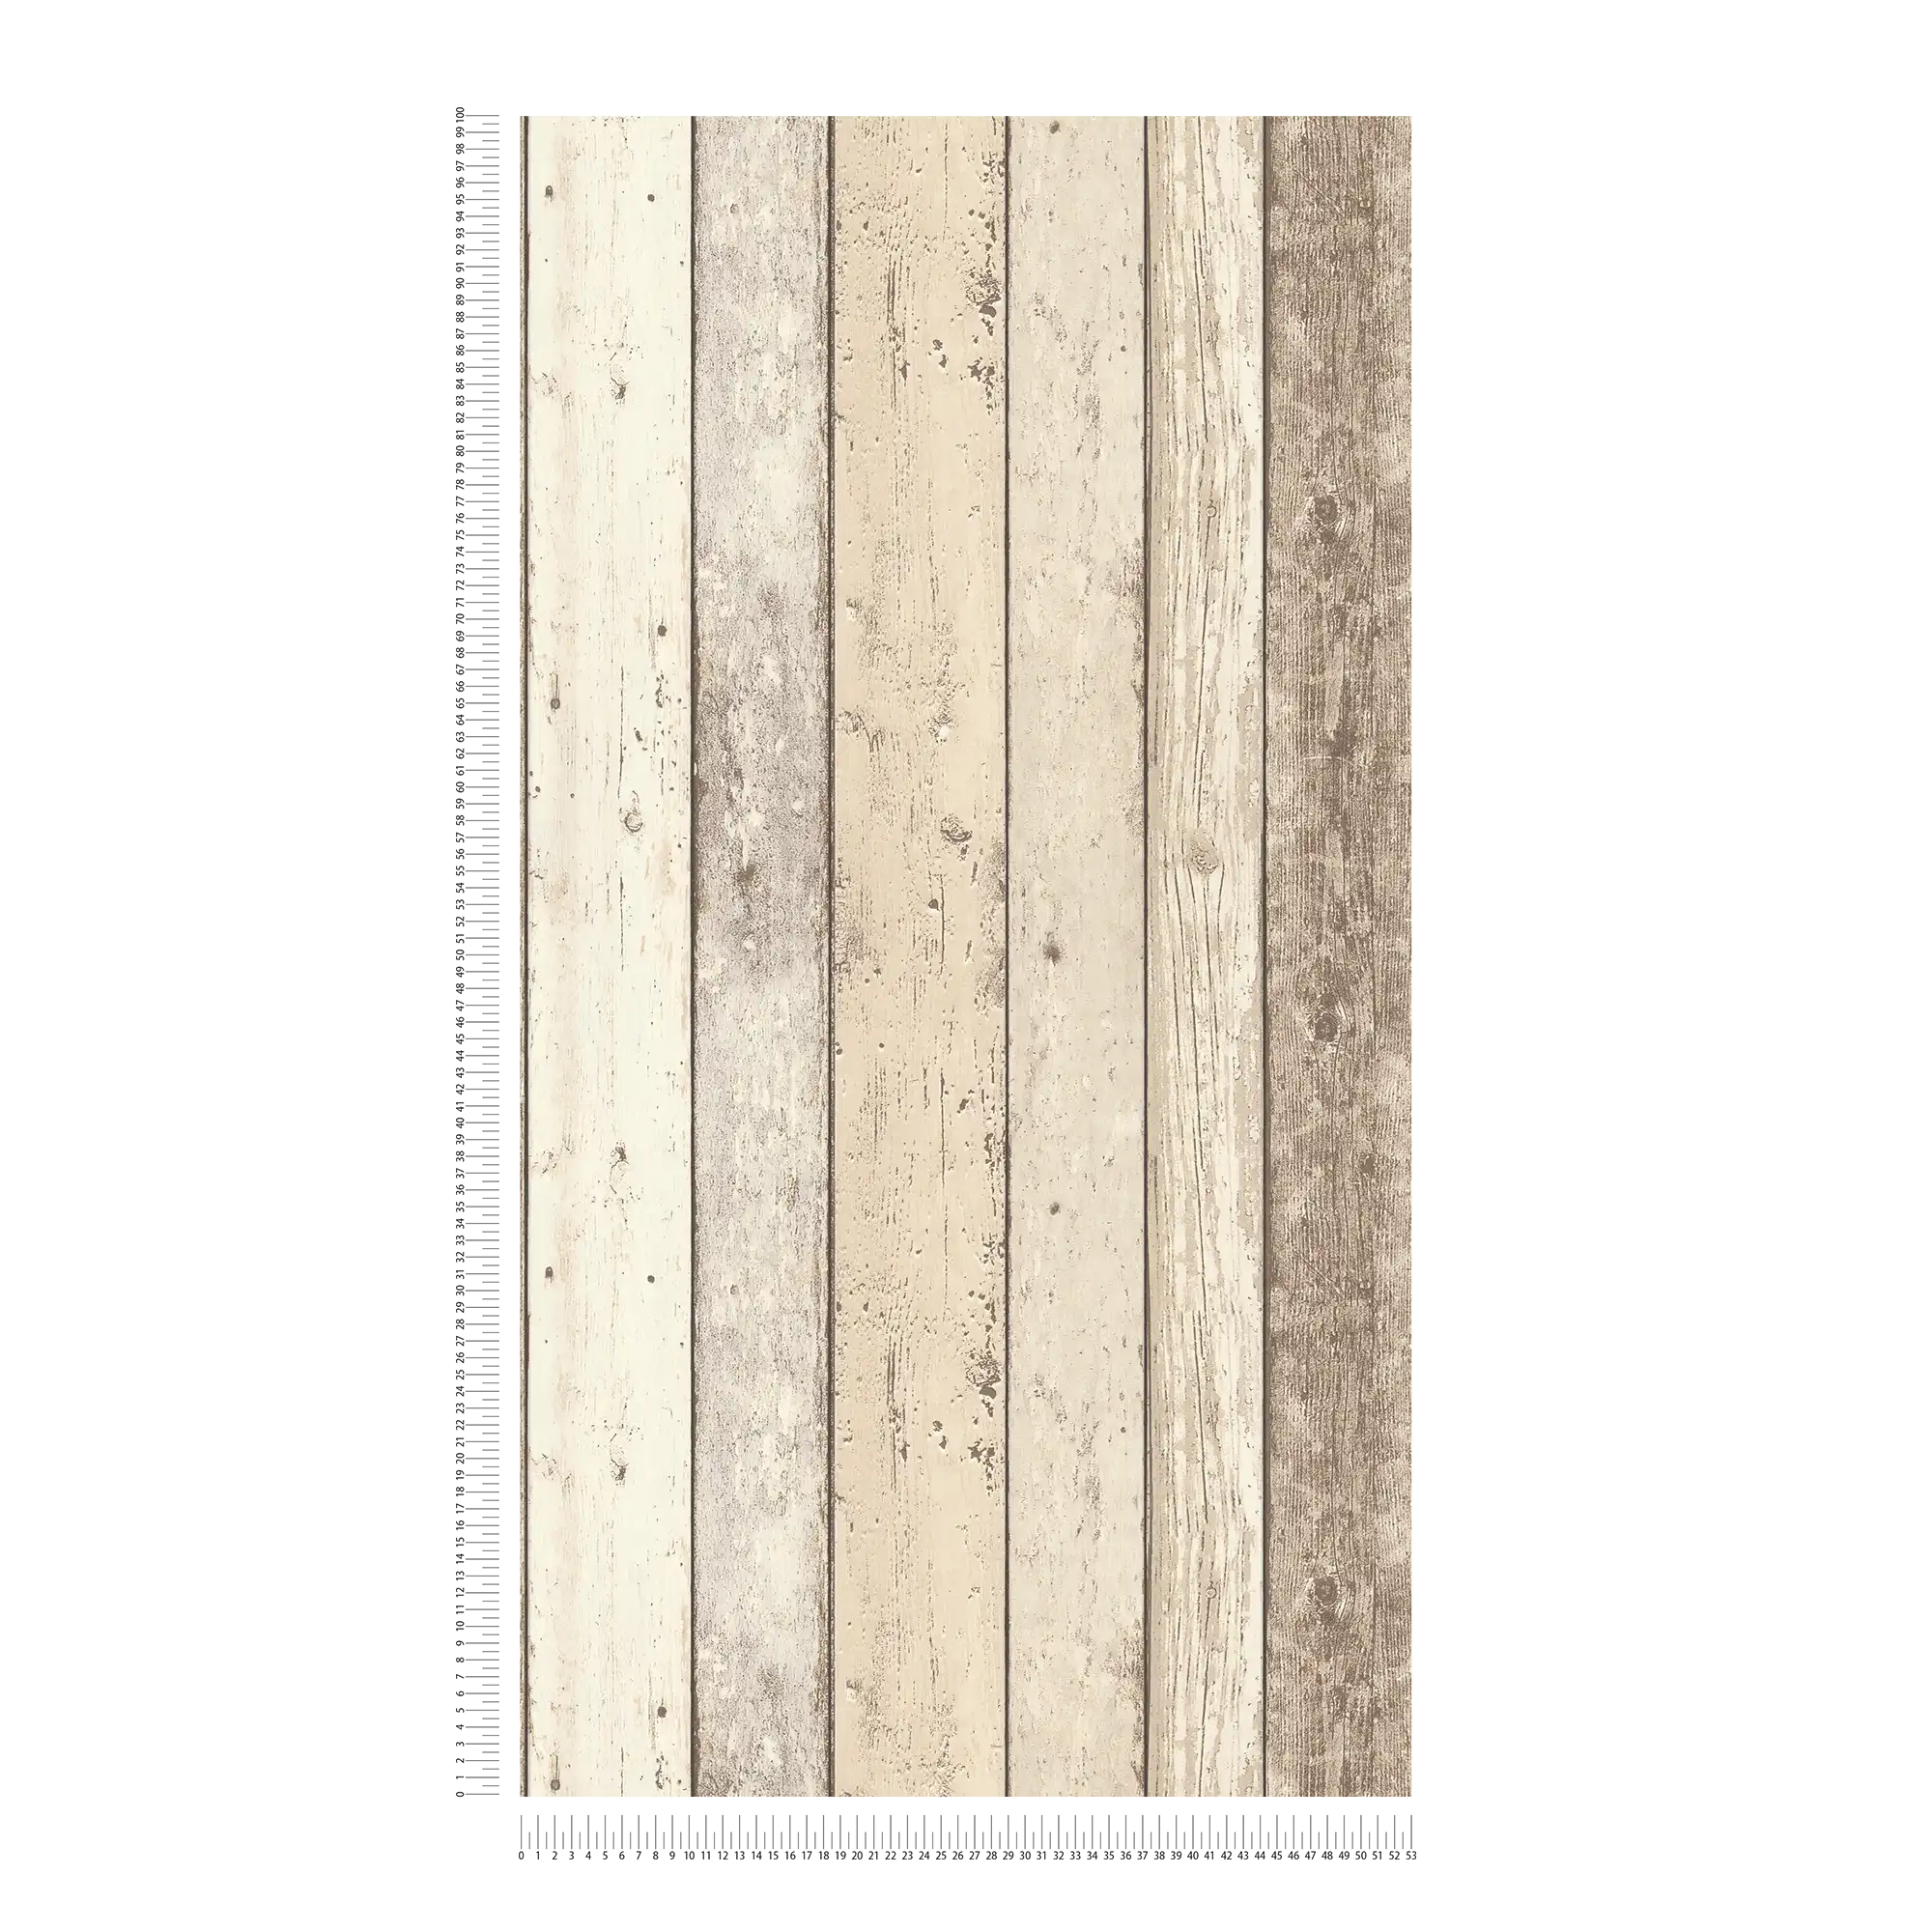             Papel pintado rústico con tablas de madera en aspecto usado - beige, marrón, blanco
        